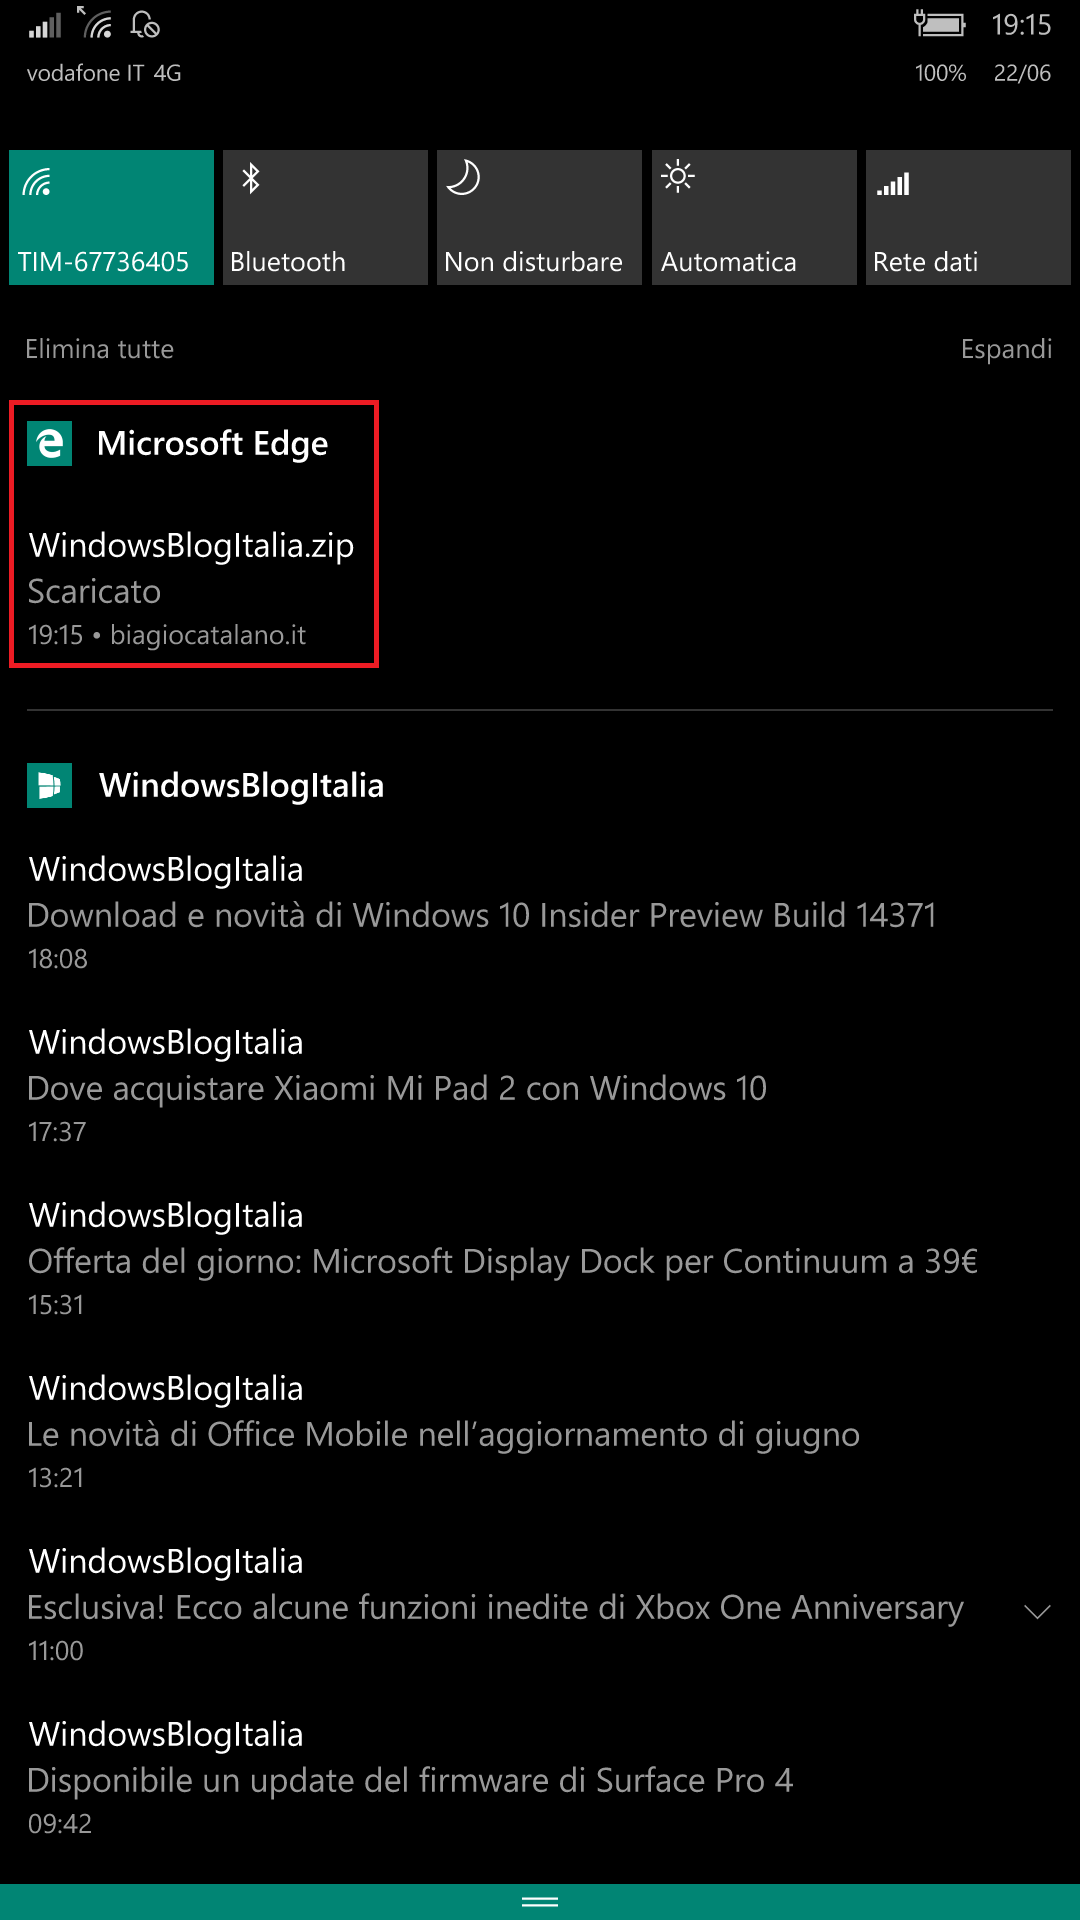 Microsoft Edge - Windows 10 Mobile - download centro notifiche